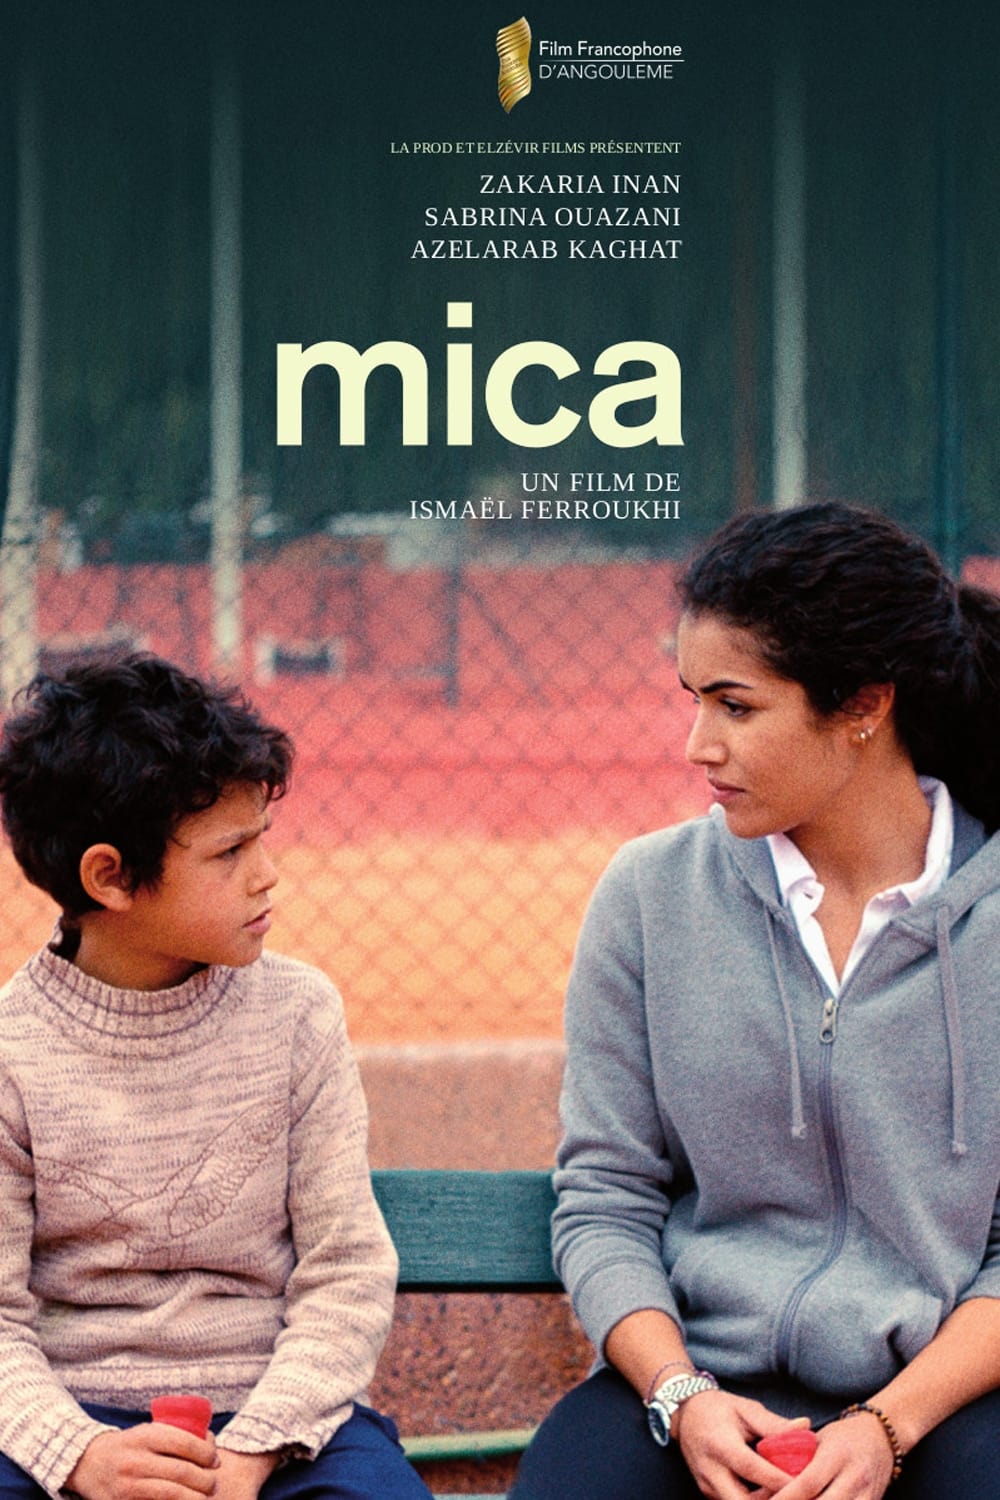 Affiche du film "Mica"